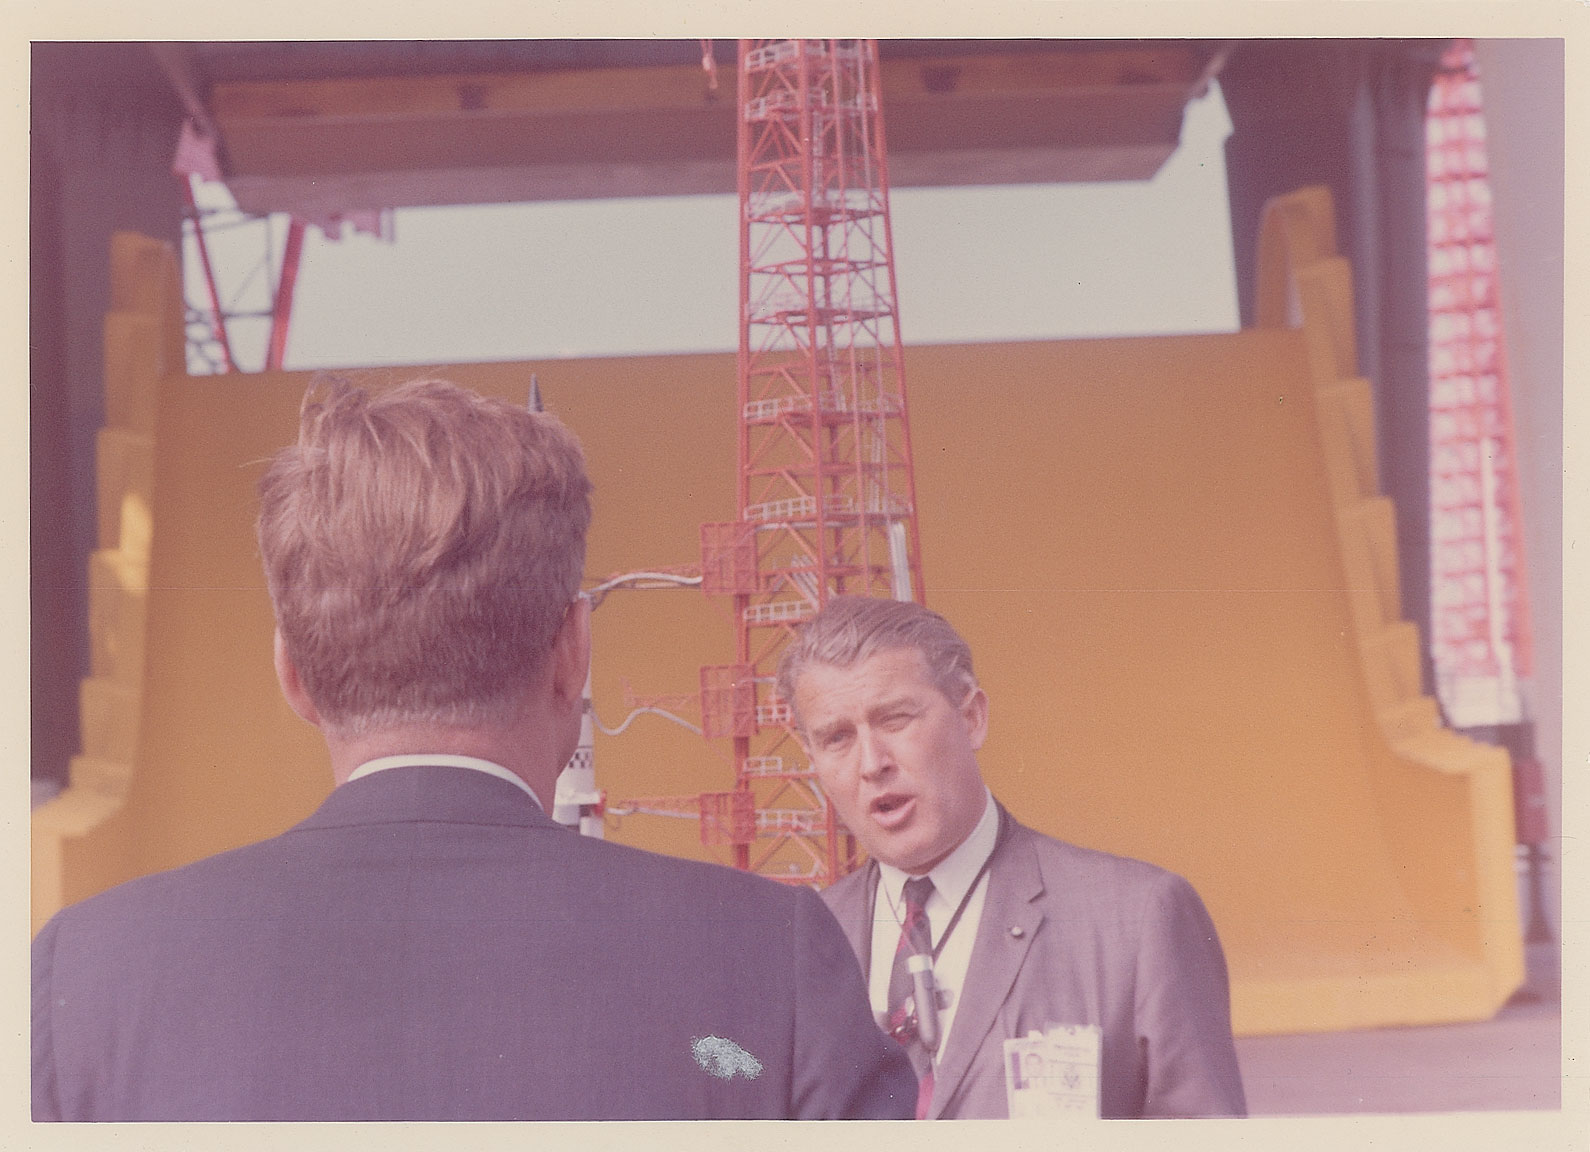 Lot #8061 John F. Kennedy and Wernher von Braun Original Photograph